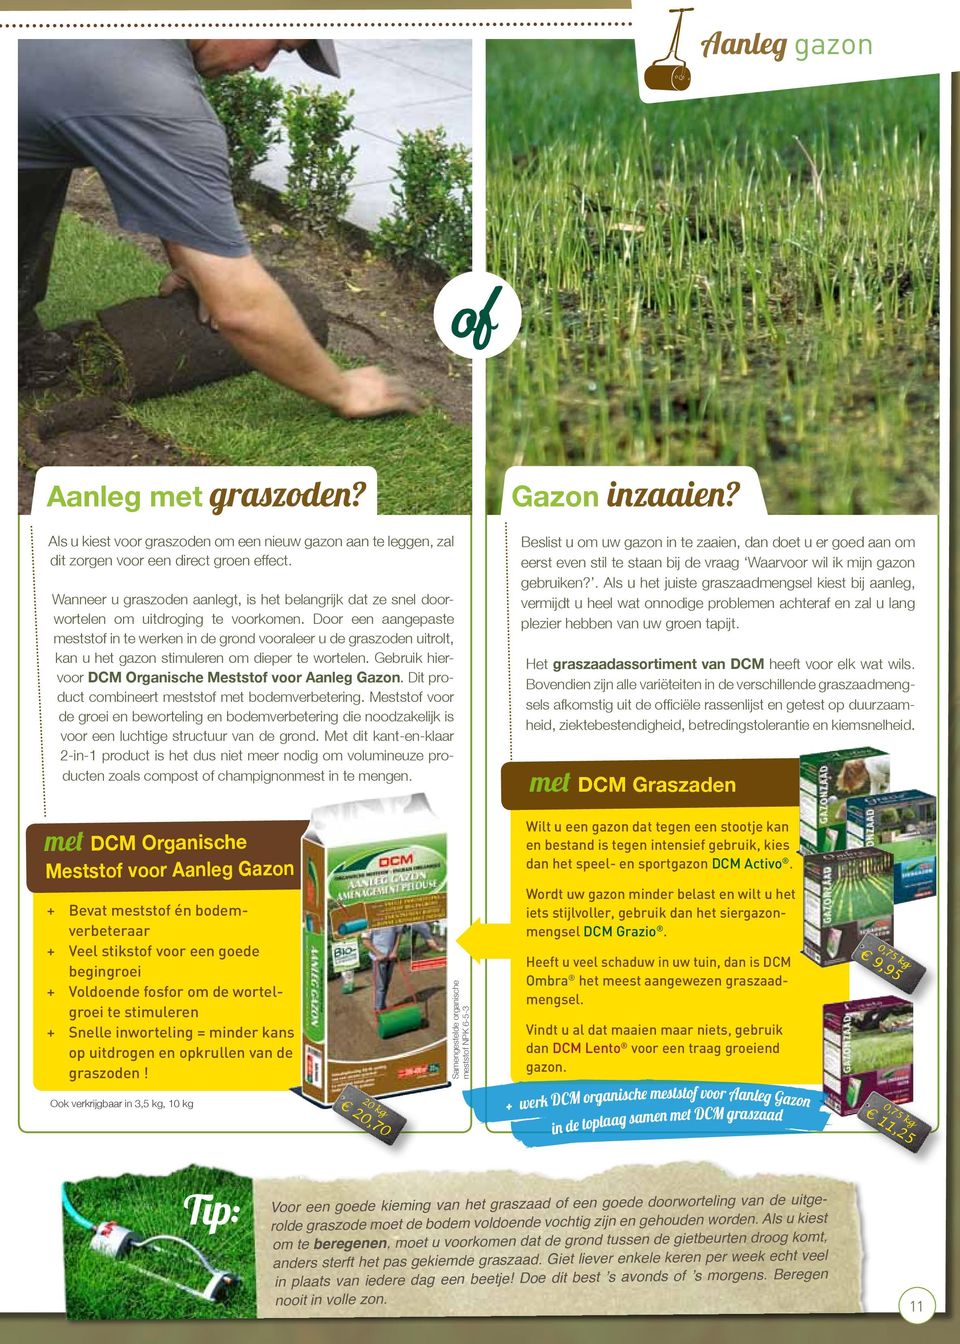 Door een aangepaste meststof in te werken in de grond vooraleer u de graszoden uitrolt, kan u het gazon stimuleren om dieper te wortelen. Gebruik hiervoor DCM Organische Meststof voor Aanleg Gazon.